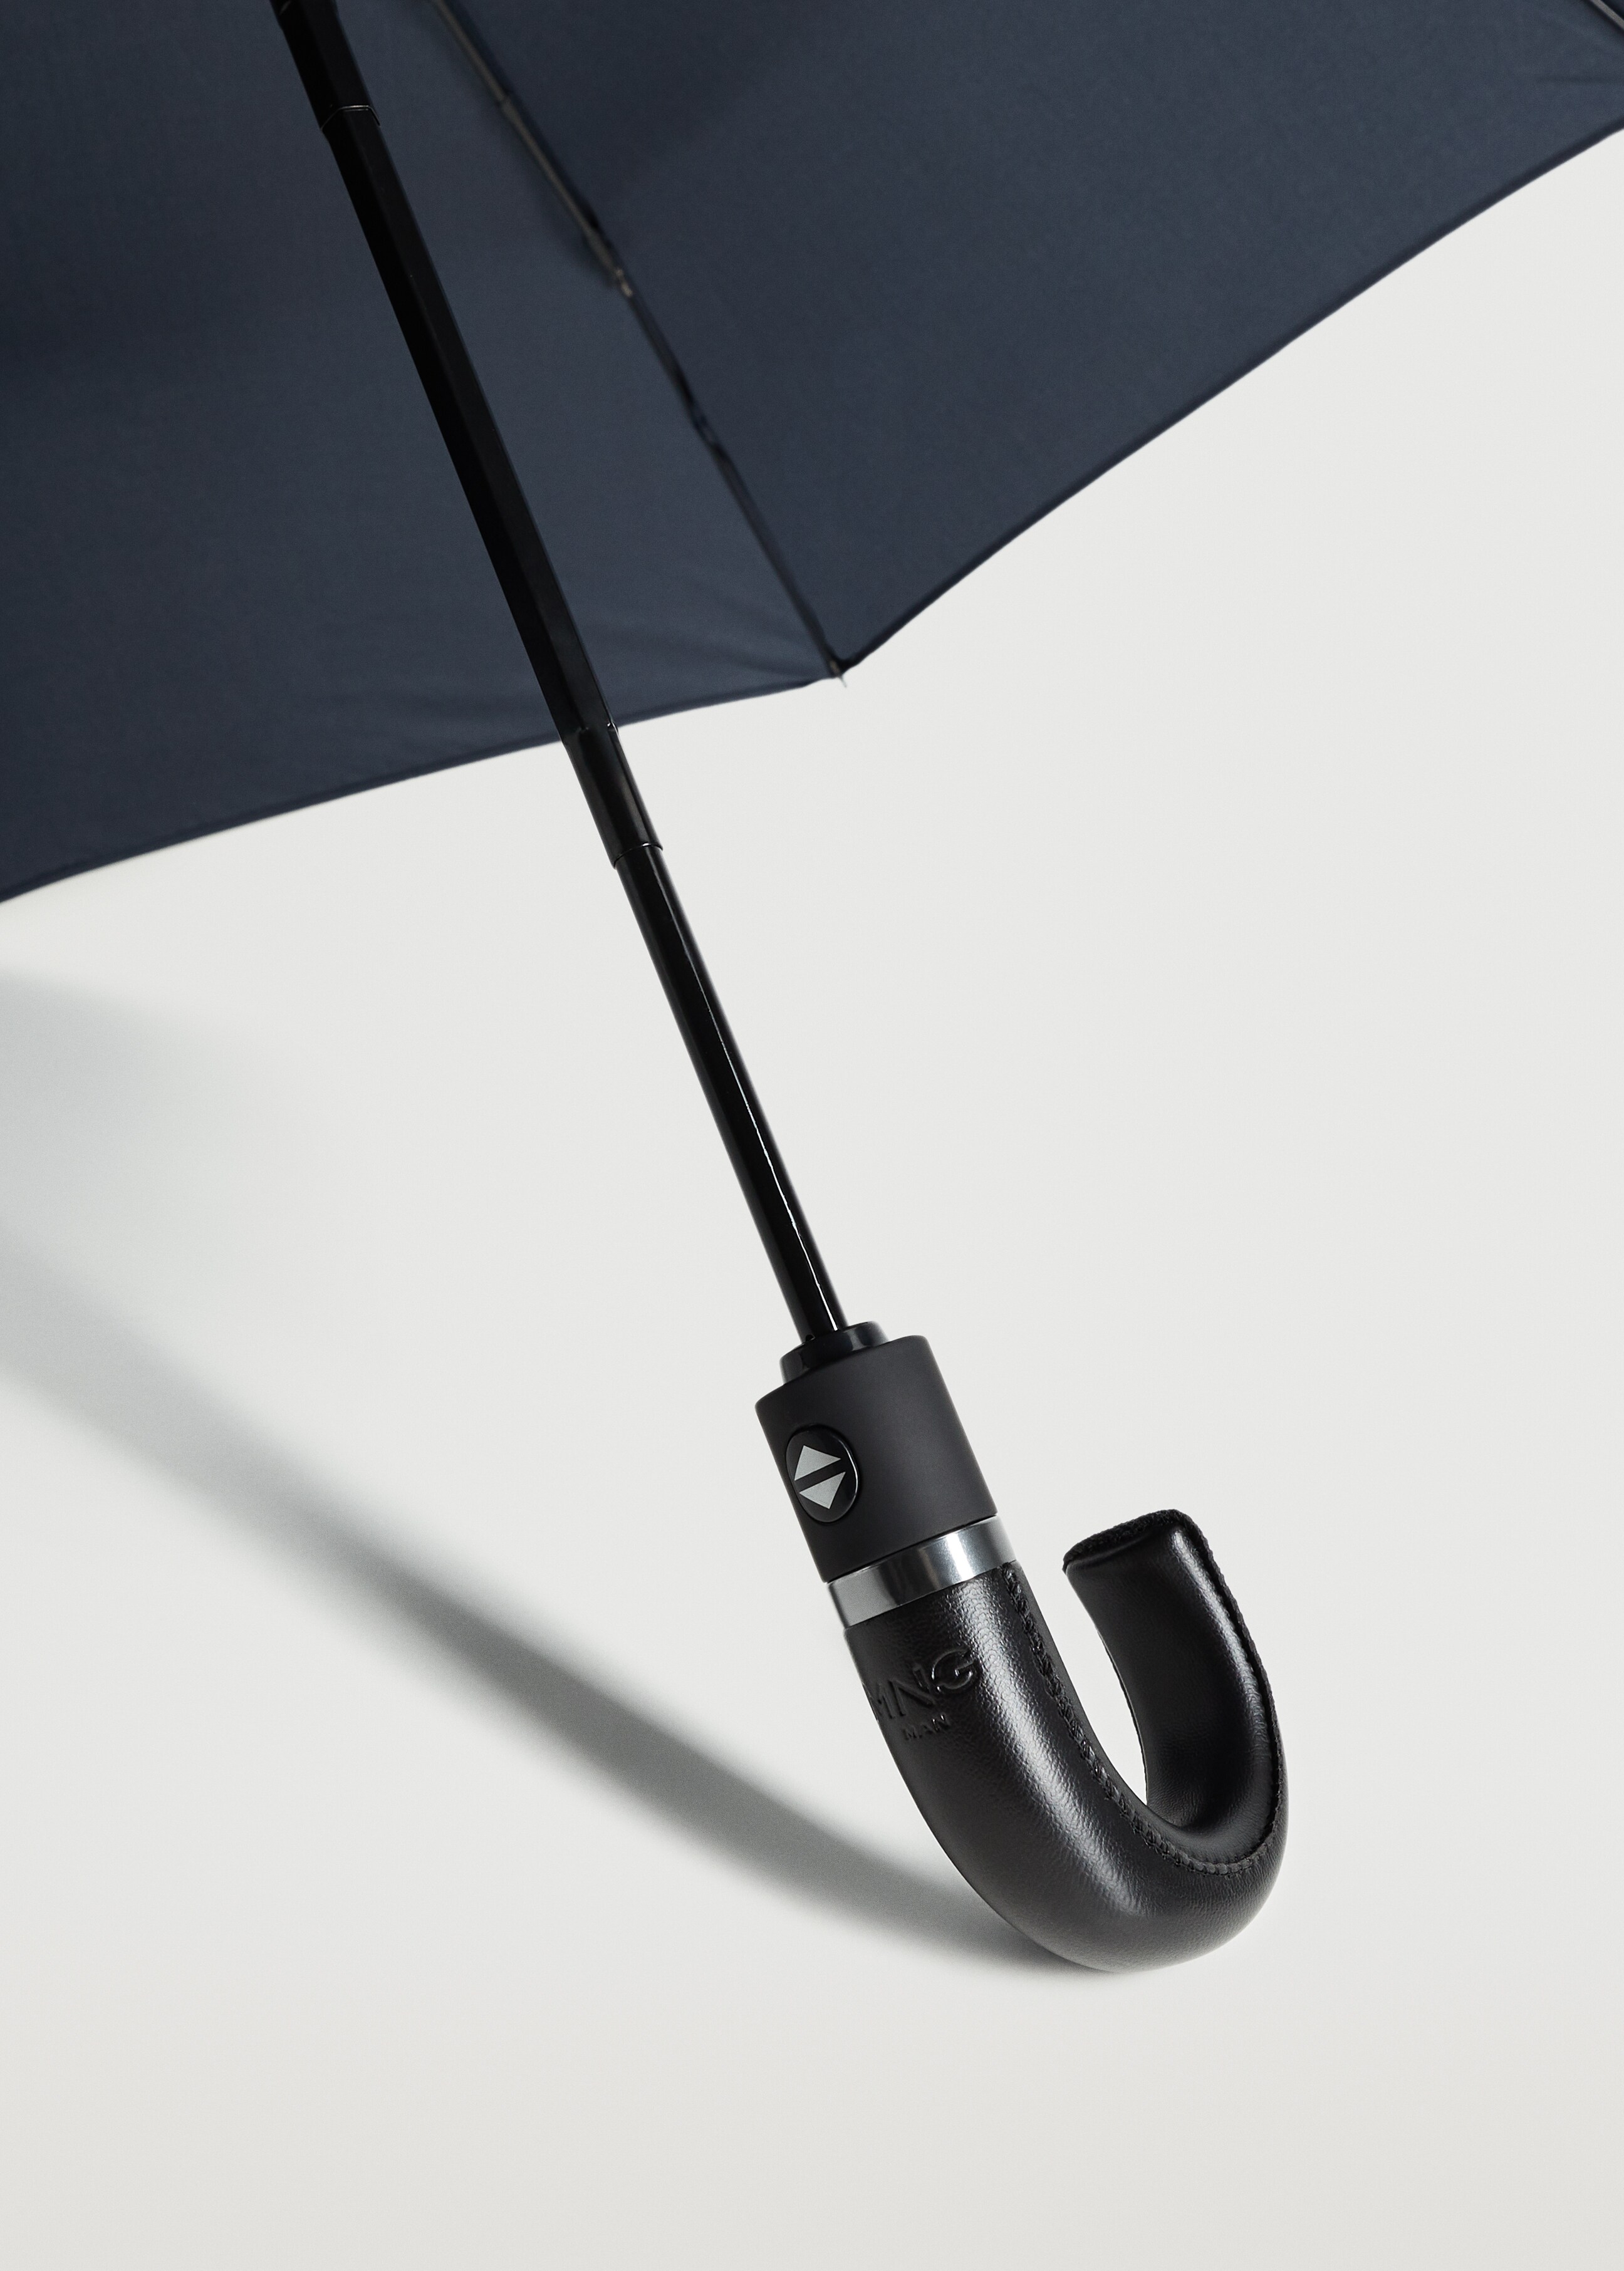 Összecsukható, sima esernyő - A termék adatai 2